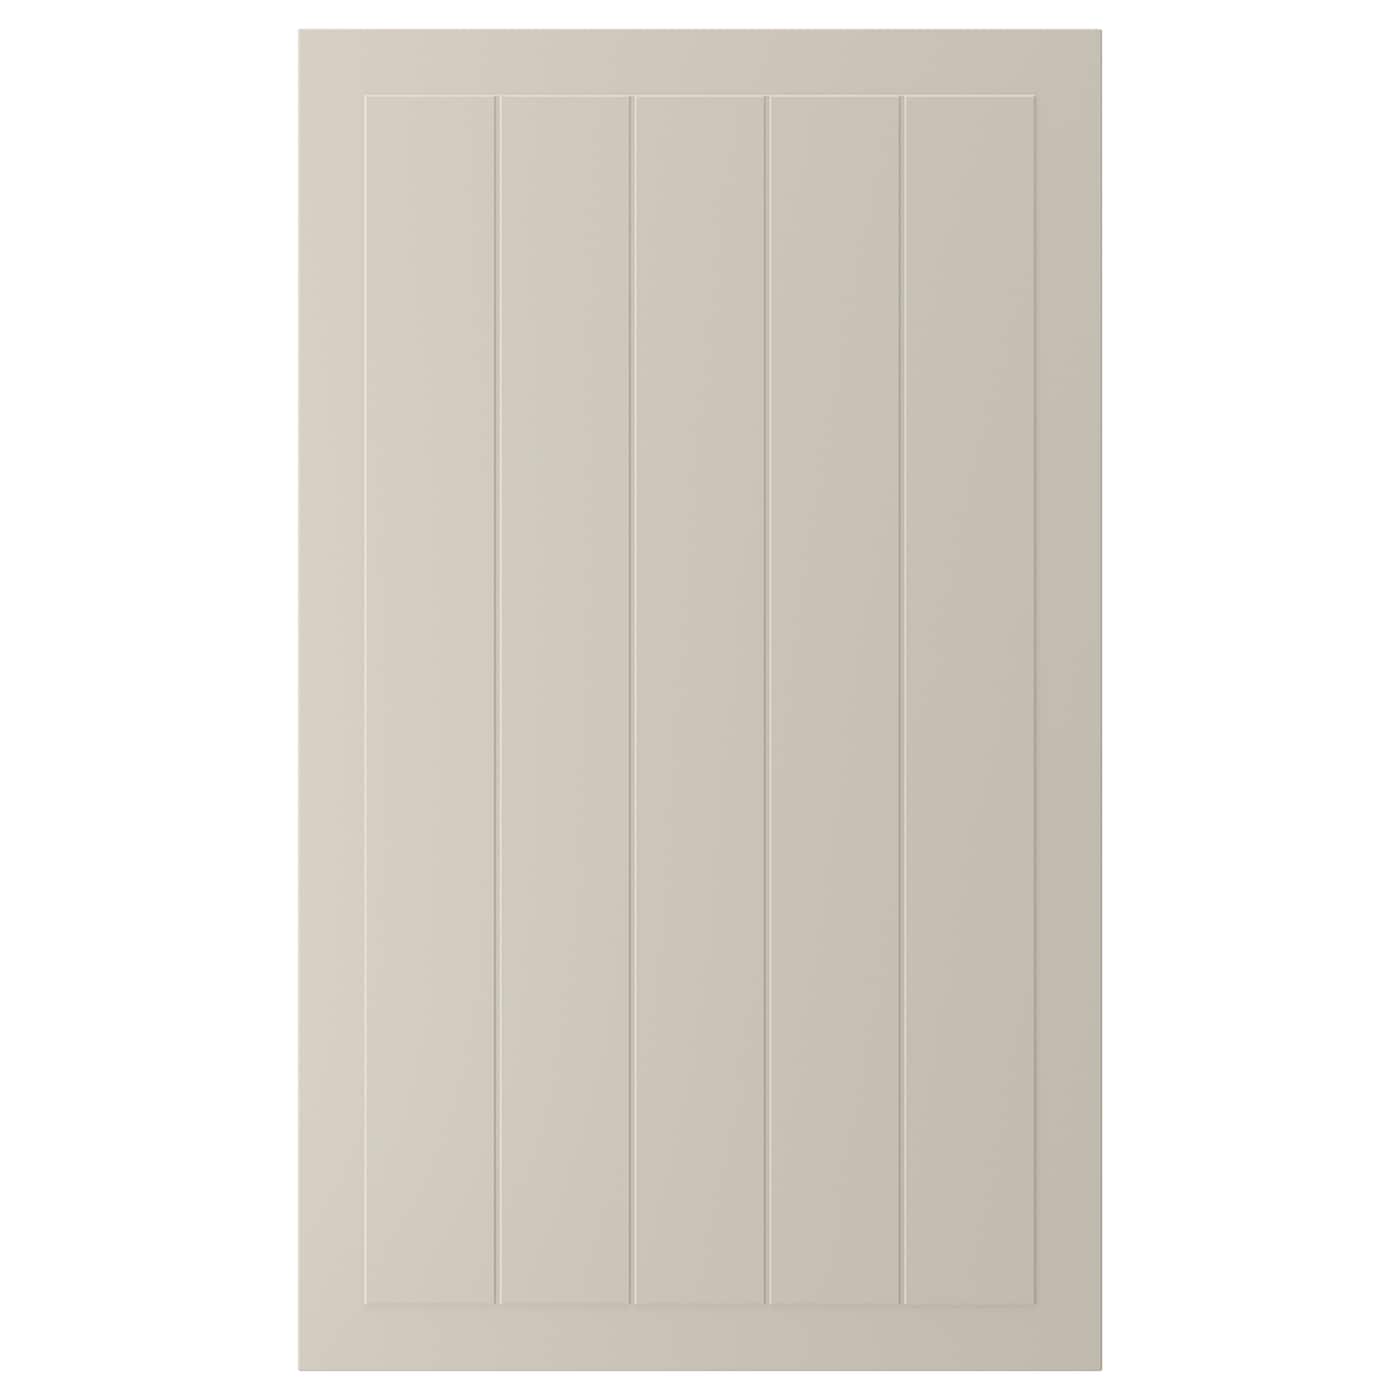 Дверца - IKEA STENSUND, 100х60 см, бежевый, СТЕНСУНД ИКЕА